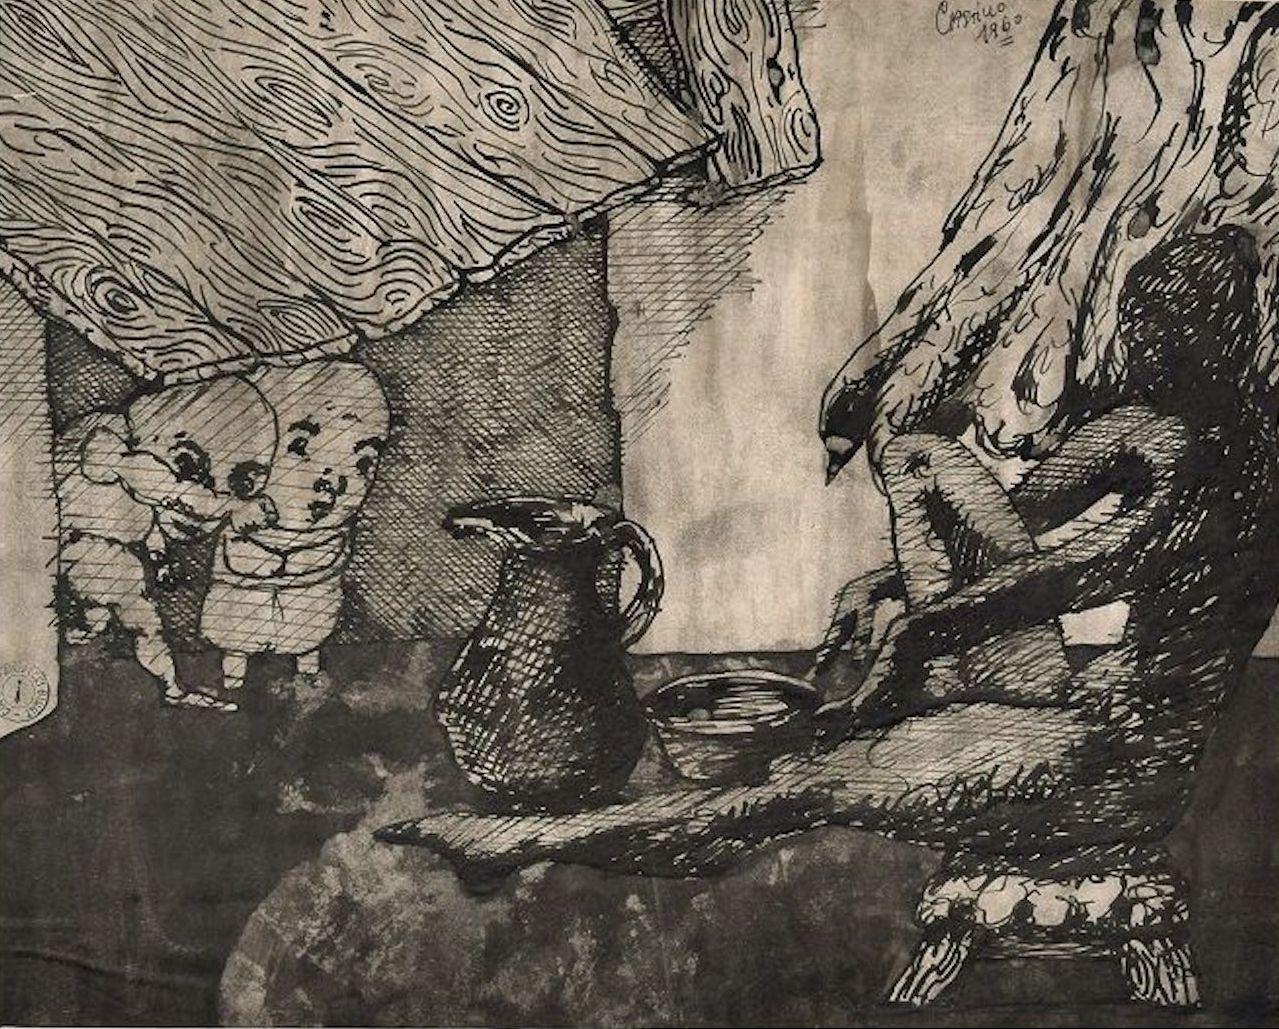 Surrealistische Komposition - Original chinesische Tuschezeichnung von Jorge Castillo - 1960 ca.